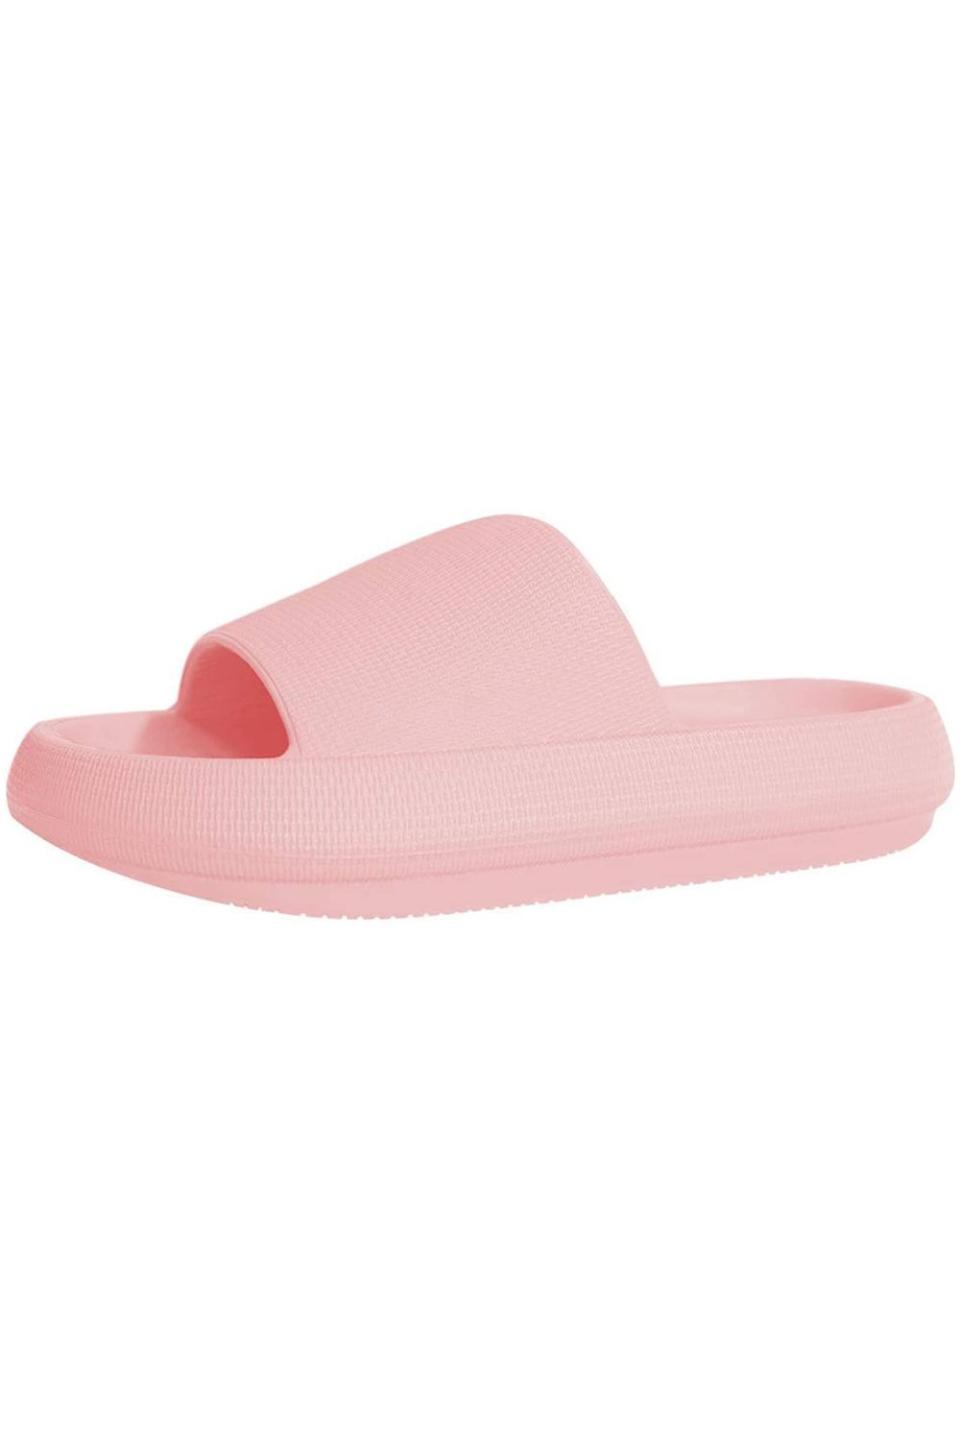 27) Slippers for Women